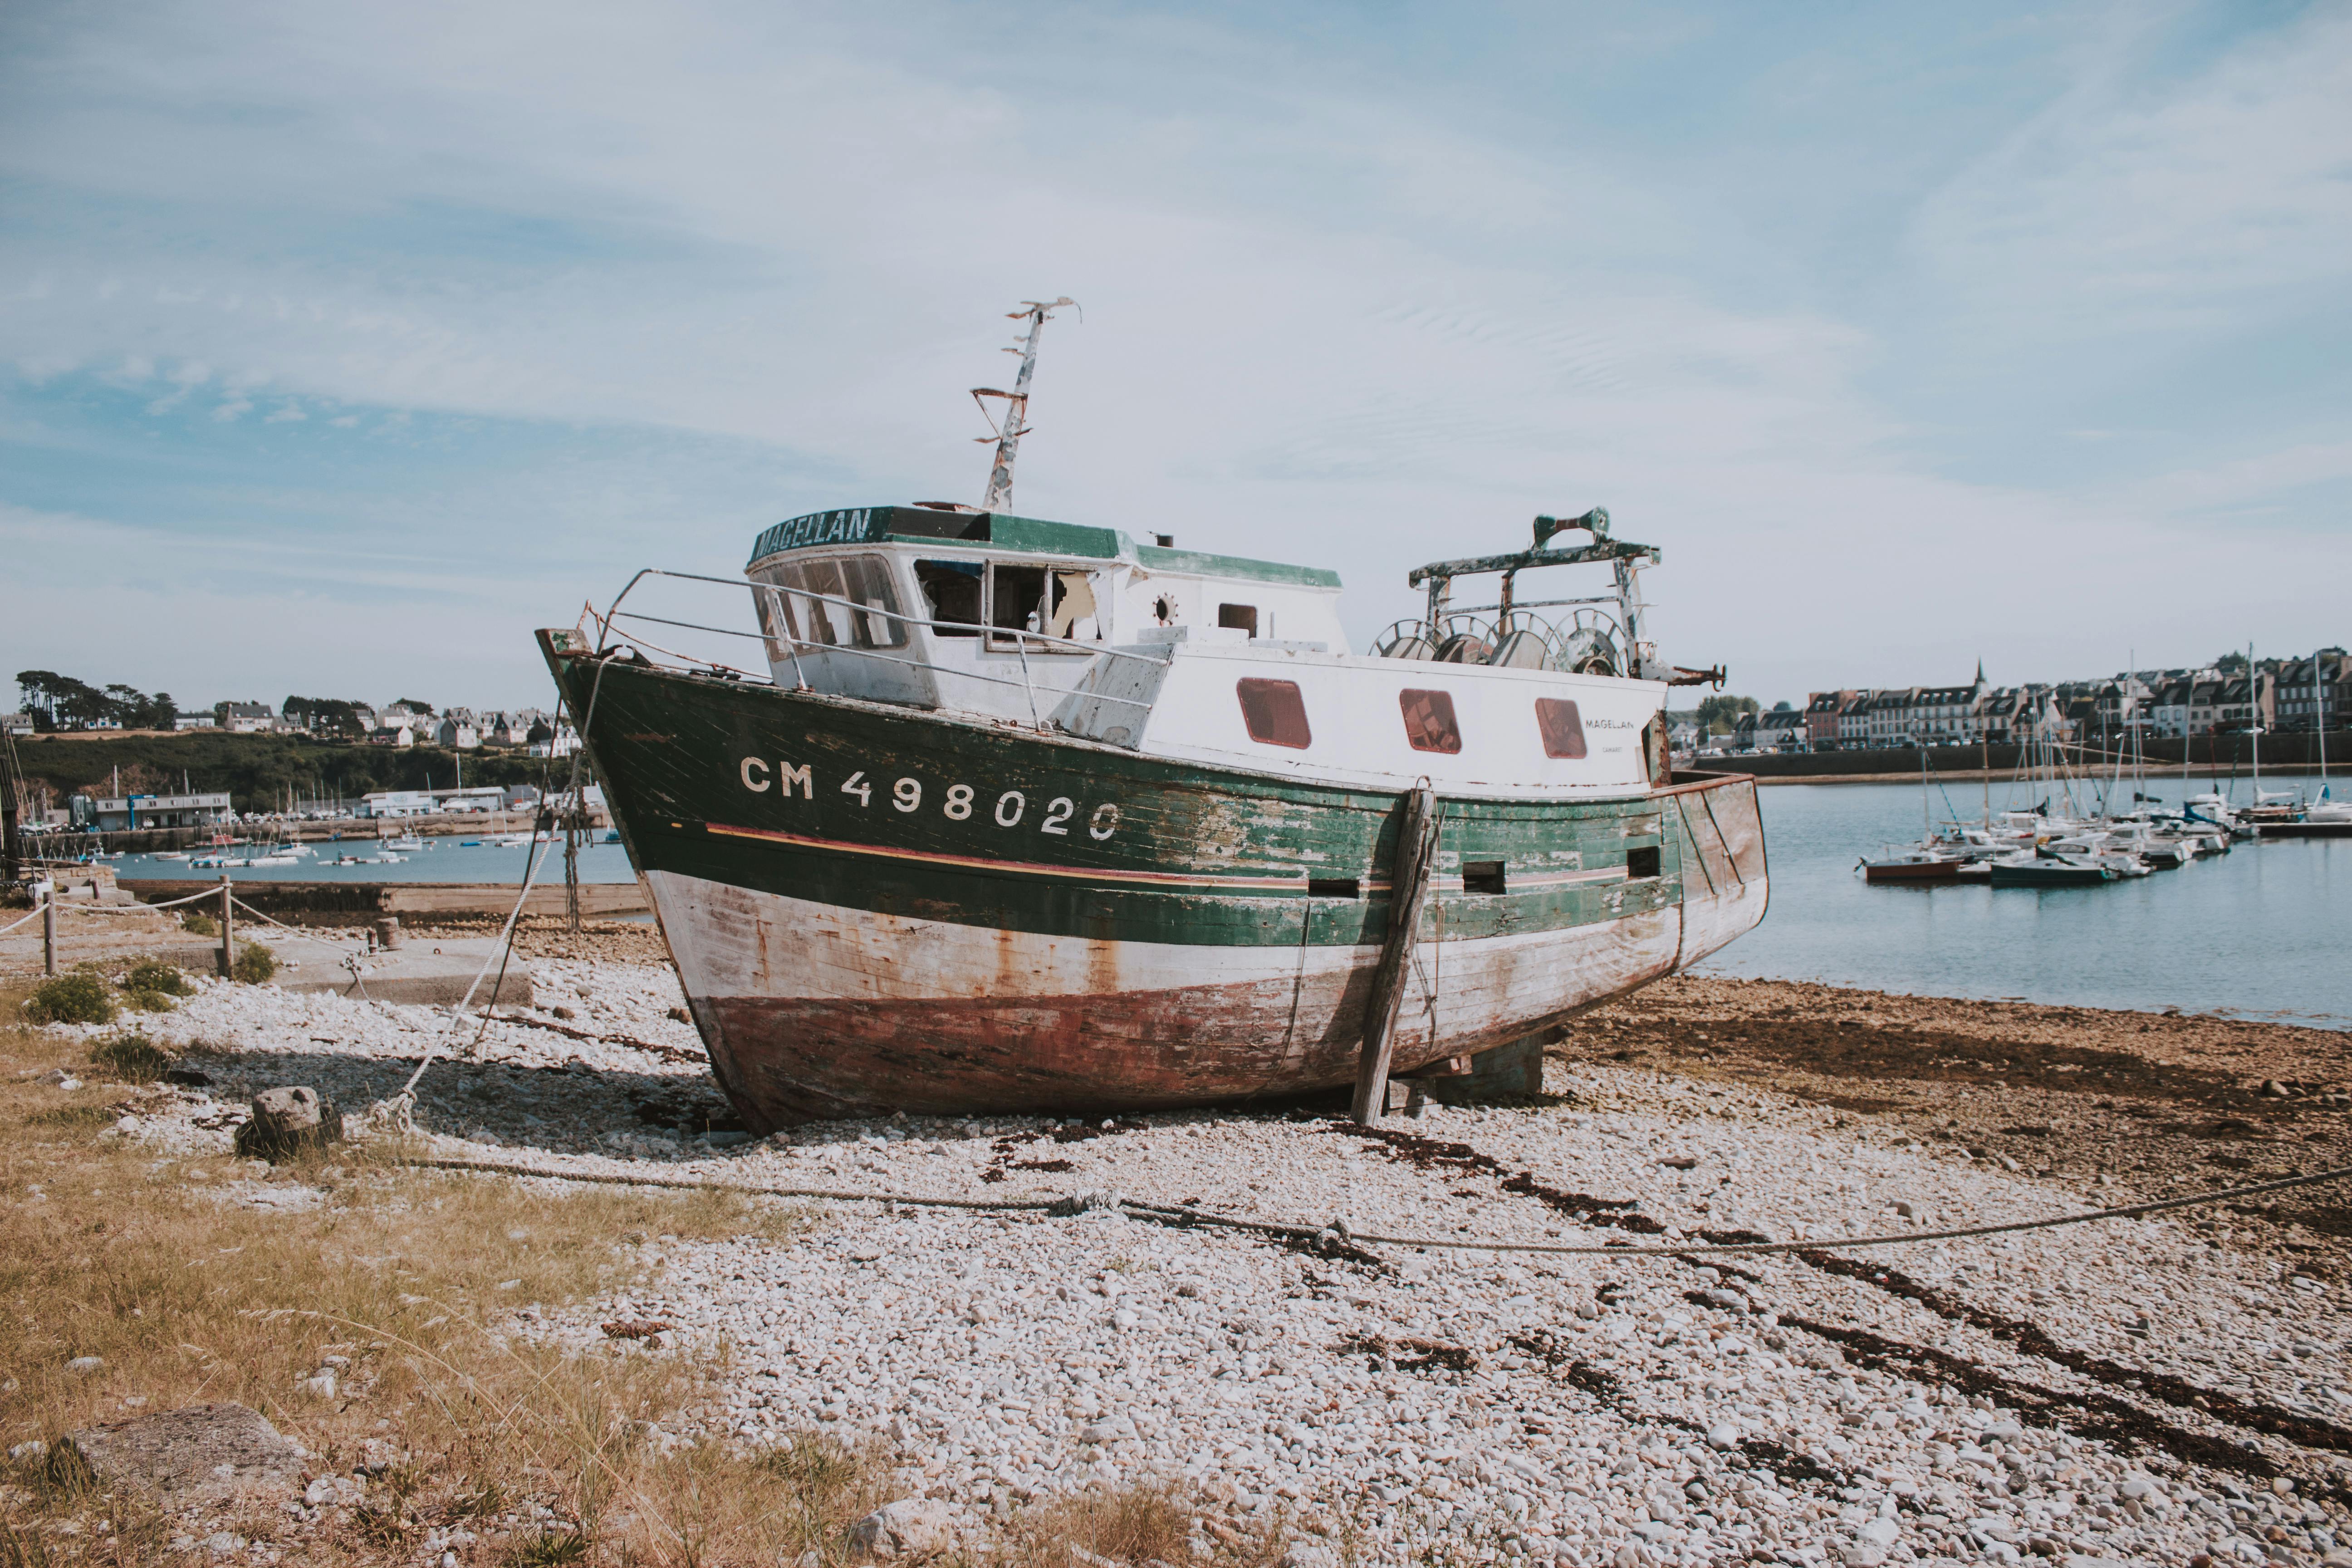 Rusty ship on seashore in harbor · Free Stock Photo